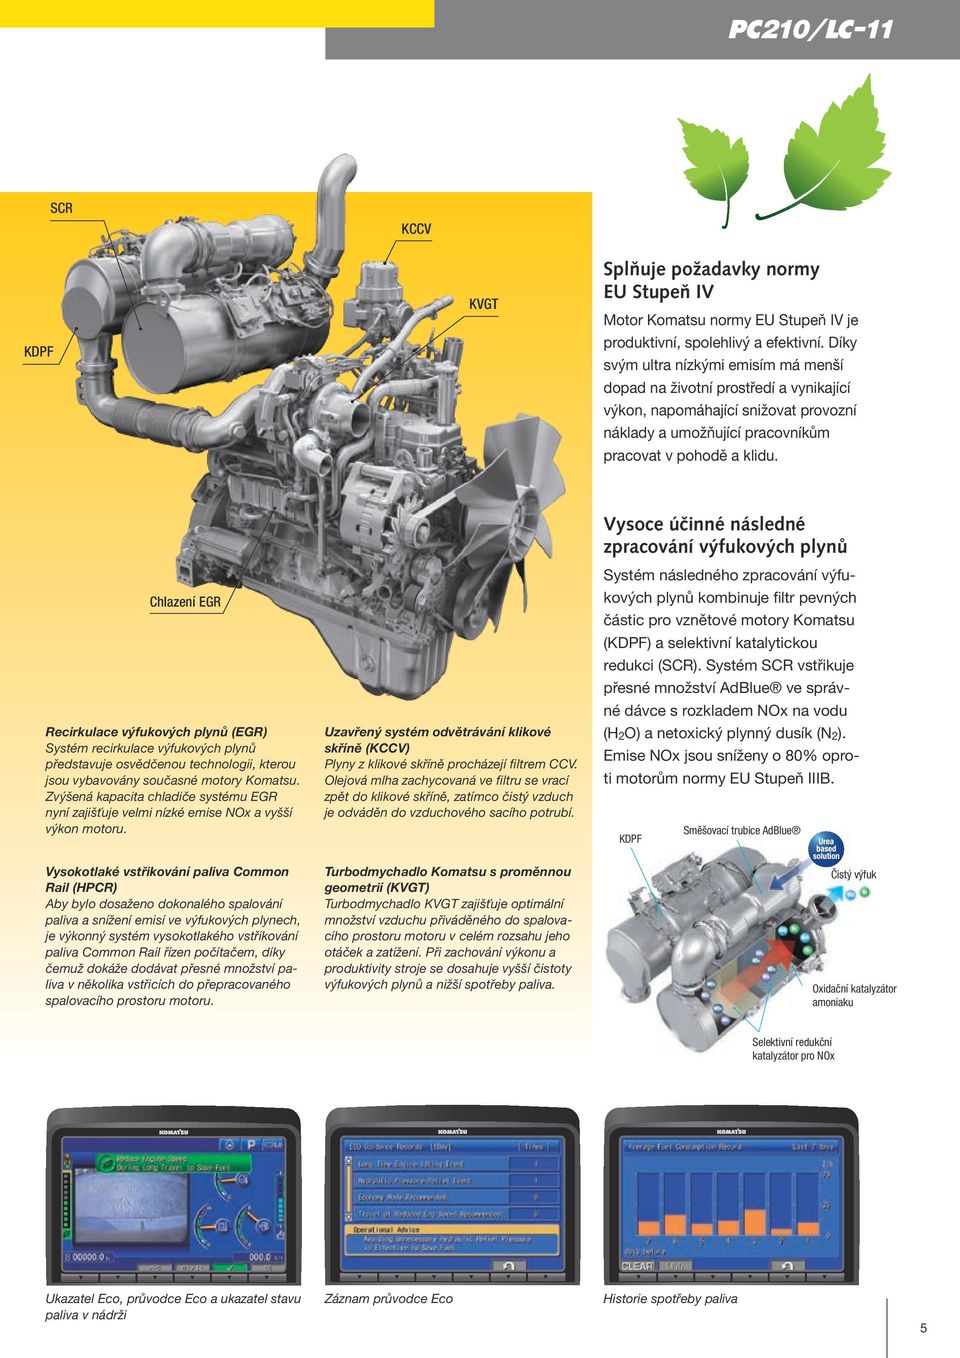 Vysoce účinné následné zpracování výfukových plynů Systém následného zpracování výfu- Chlazení EGR kových plynů kombinuje filtr pevných částic pro vznětové motory Komatsu (KDPF) a selektivní